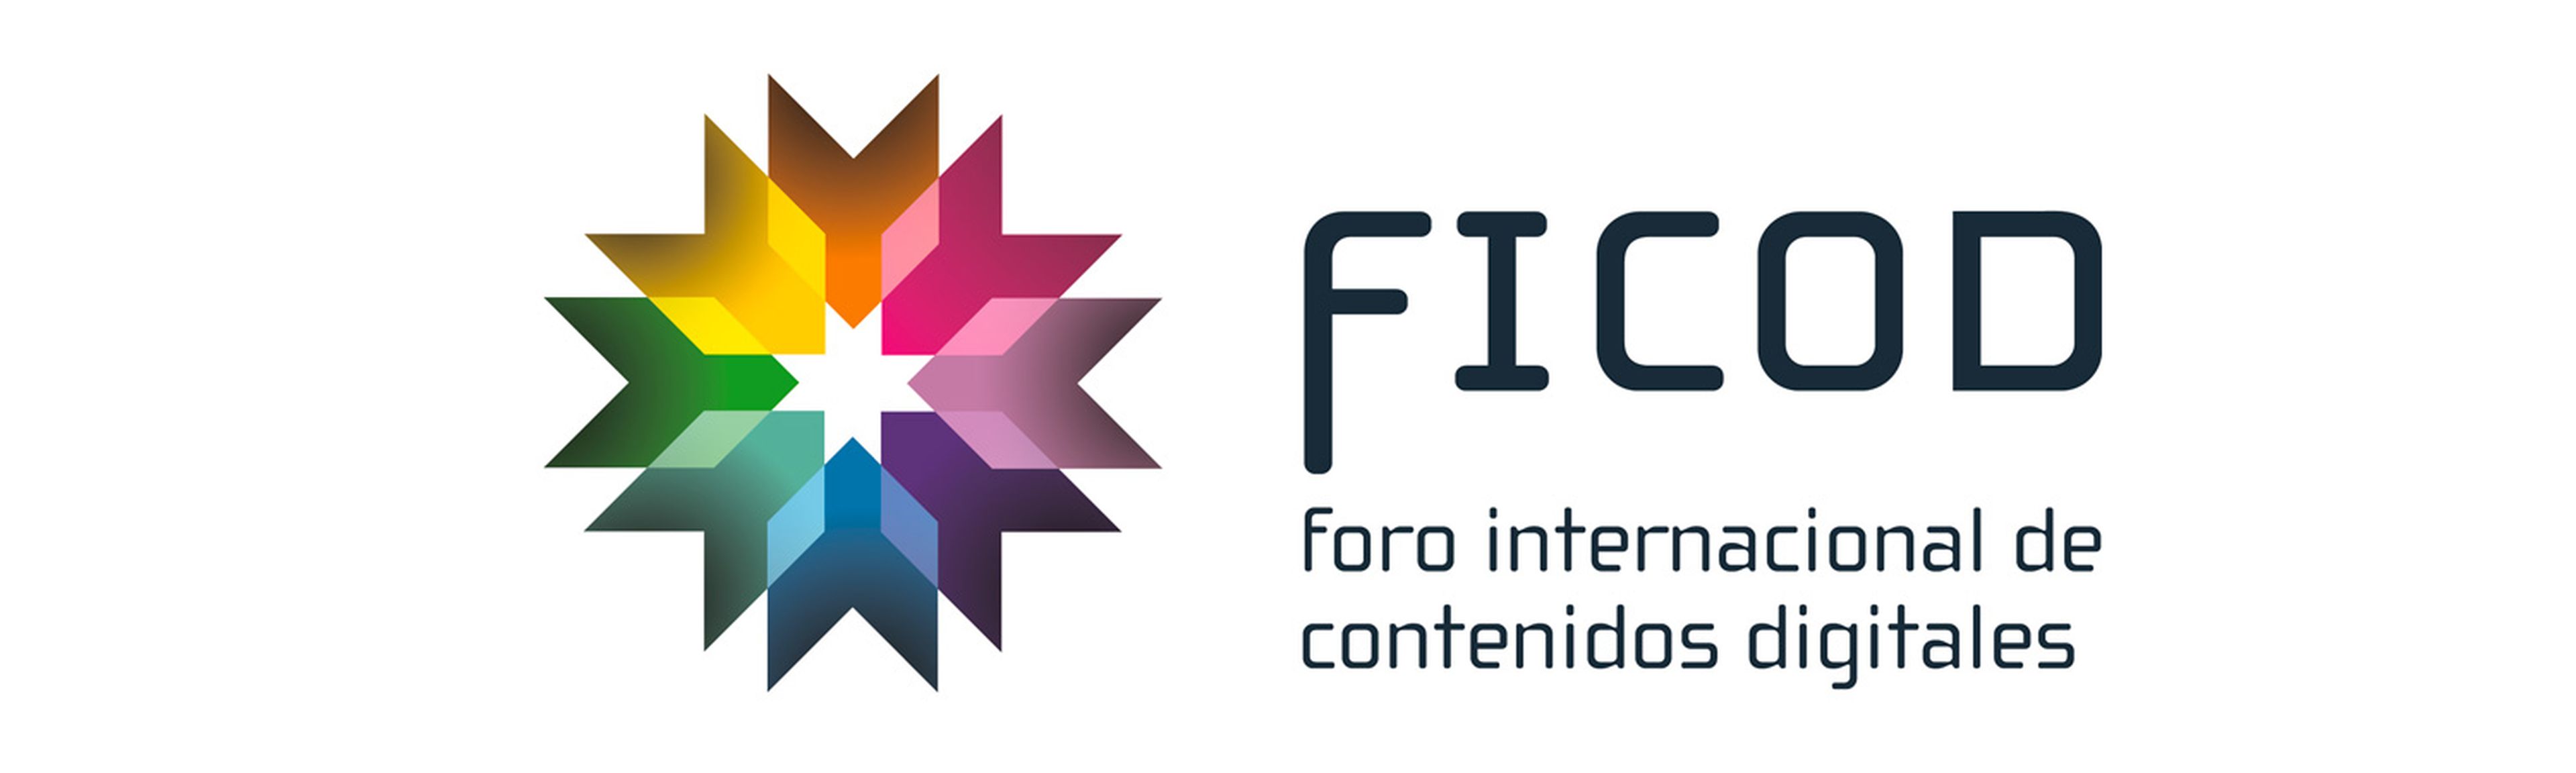 FICOD 2015 - Logo